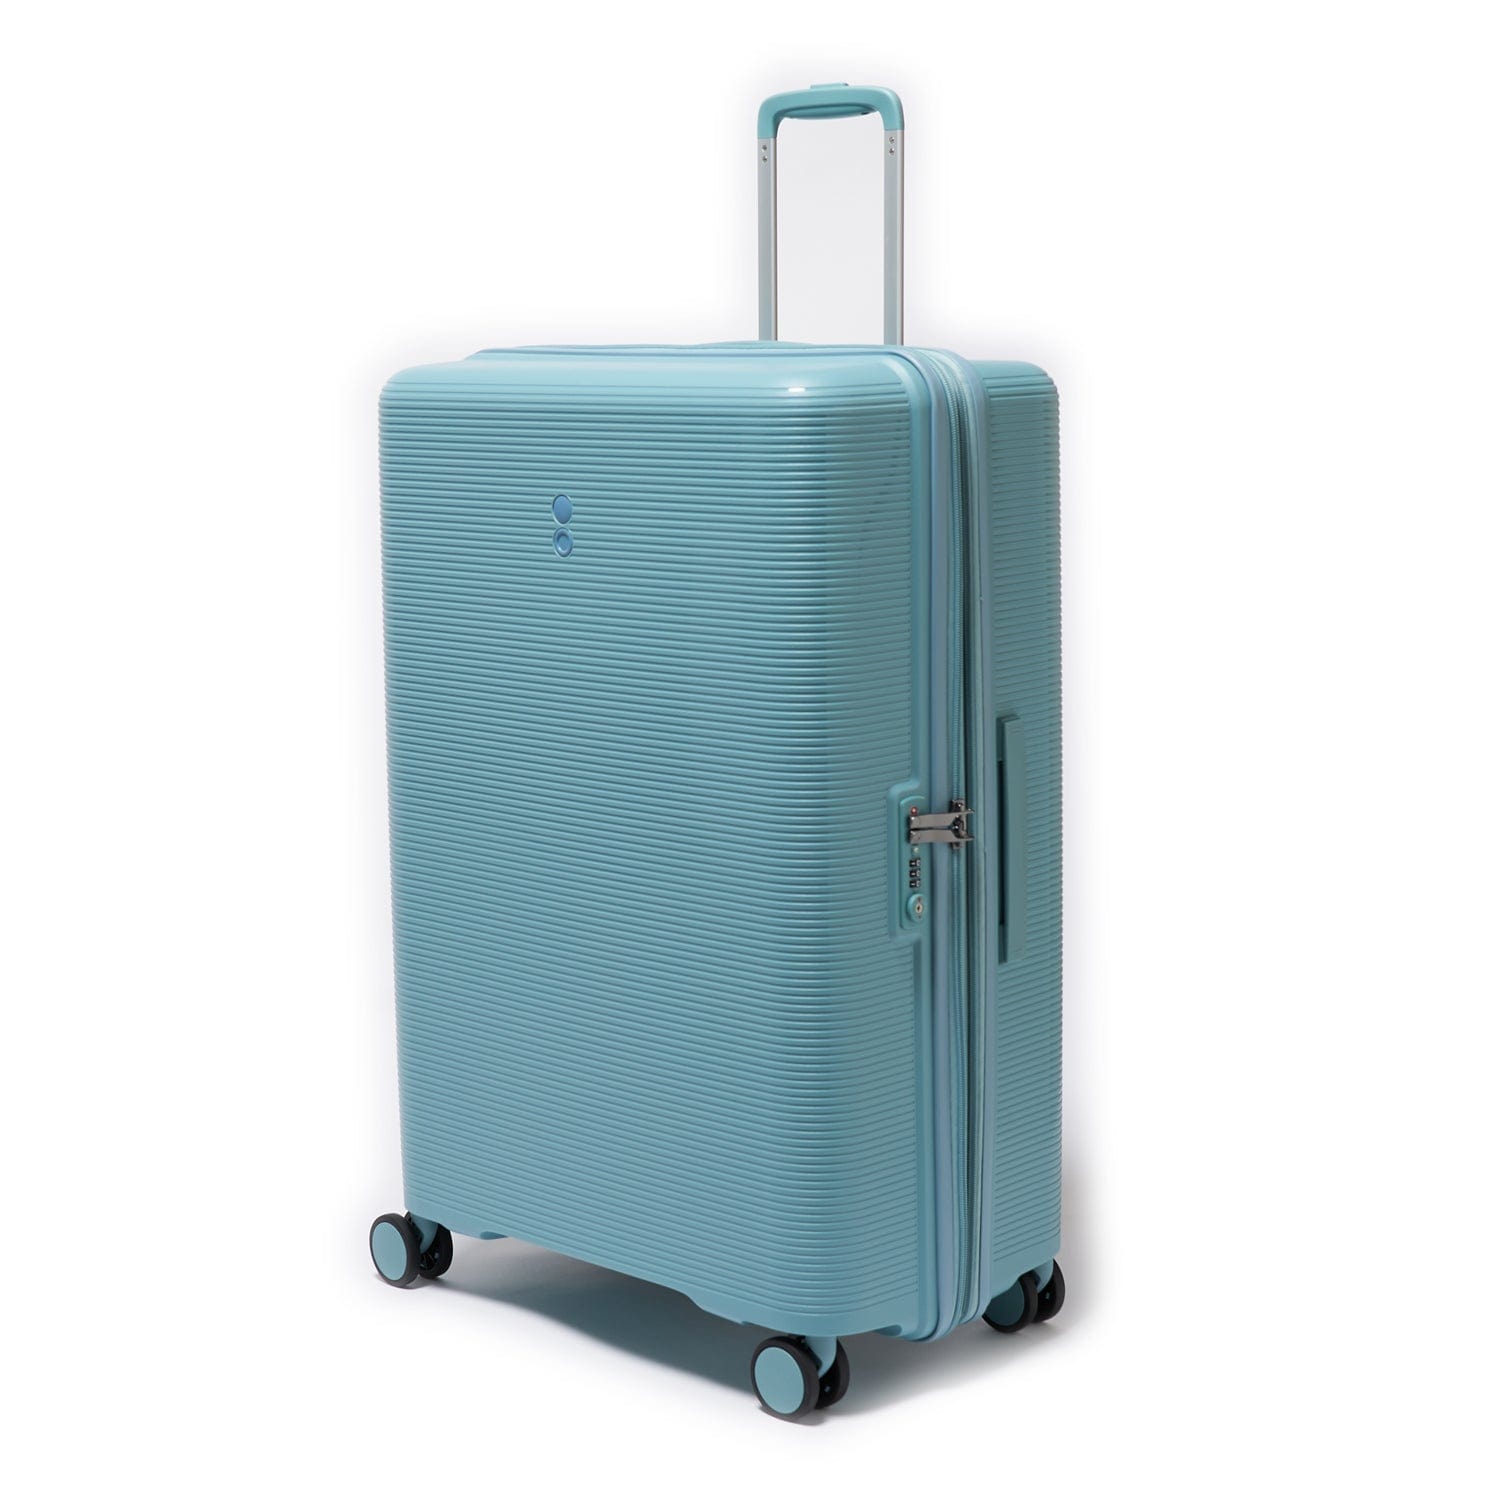 Echolac Forza 65cm Hardcase Expandable 4 Double Wheel Cabin Luggage Trolley Coastal Blue - PW005 24 Coastal Blue